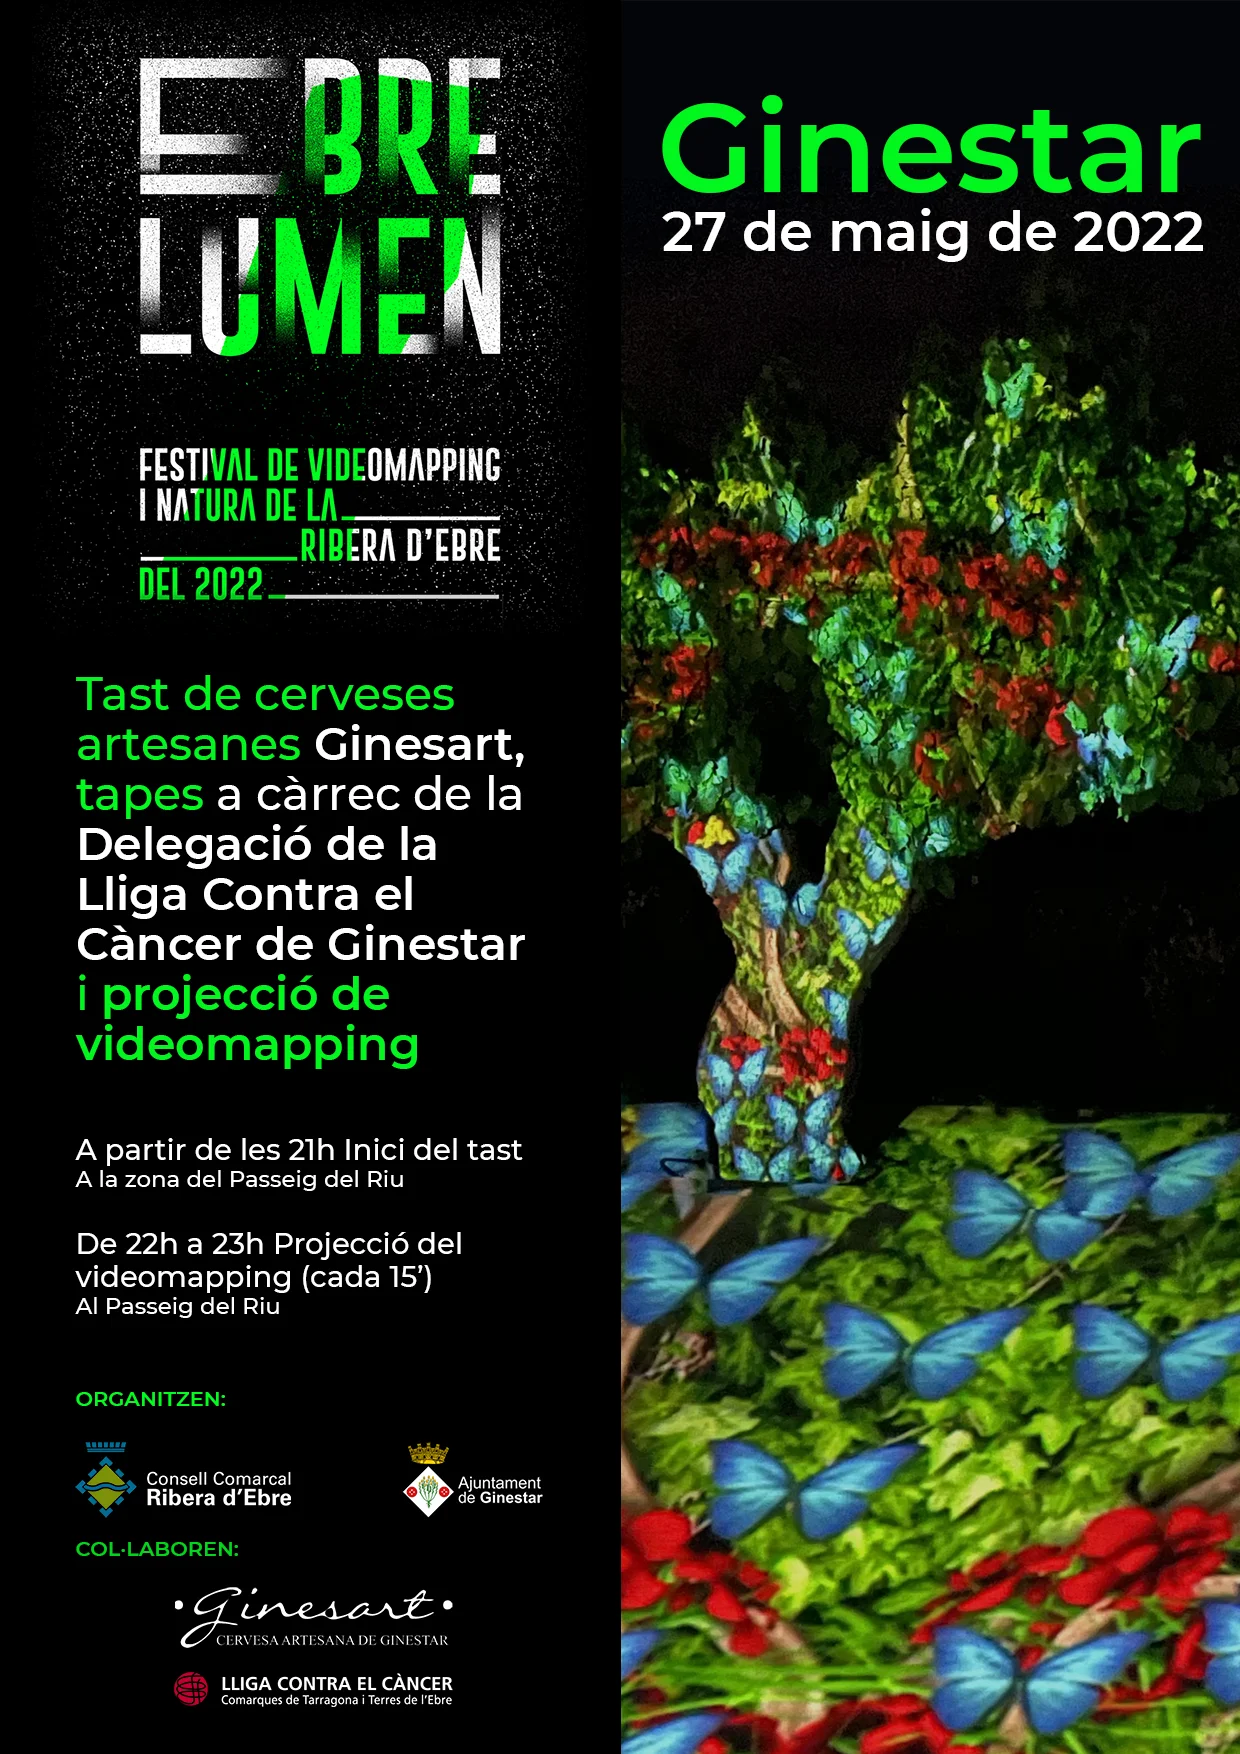 Ebre Lumen, festival de videomapping i natura de la Ribera d'Ebre a Ginestar